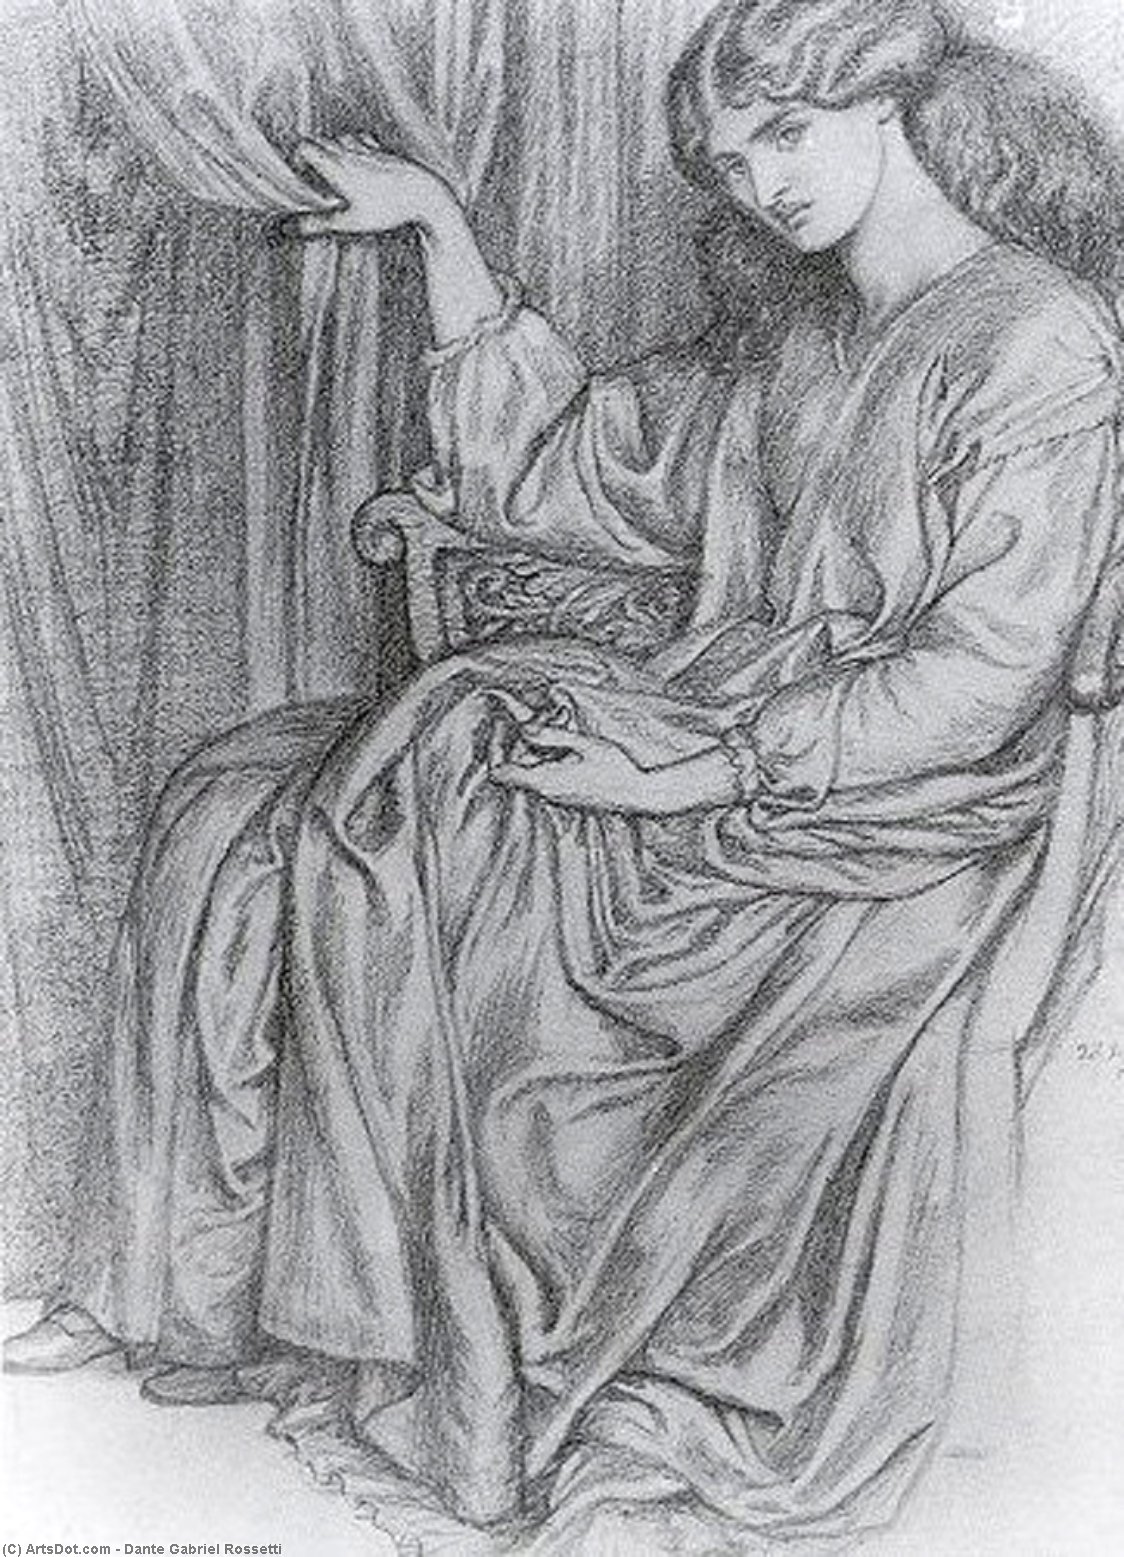 WikiOO.org - Güzel Sanatlar Ansiklopedisi - Resim, Resimler Dante Gabriel Rossetti - Silence